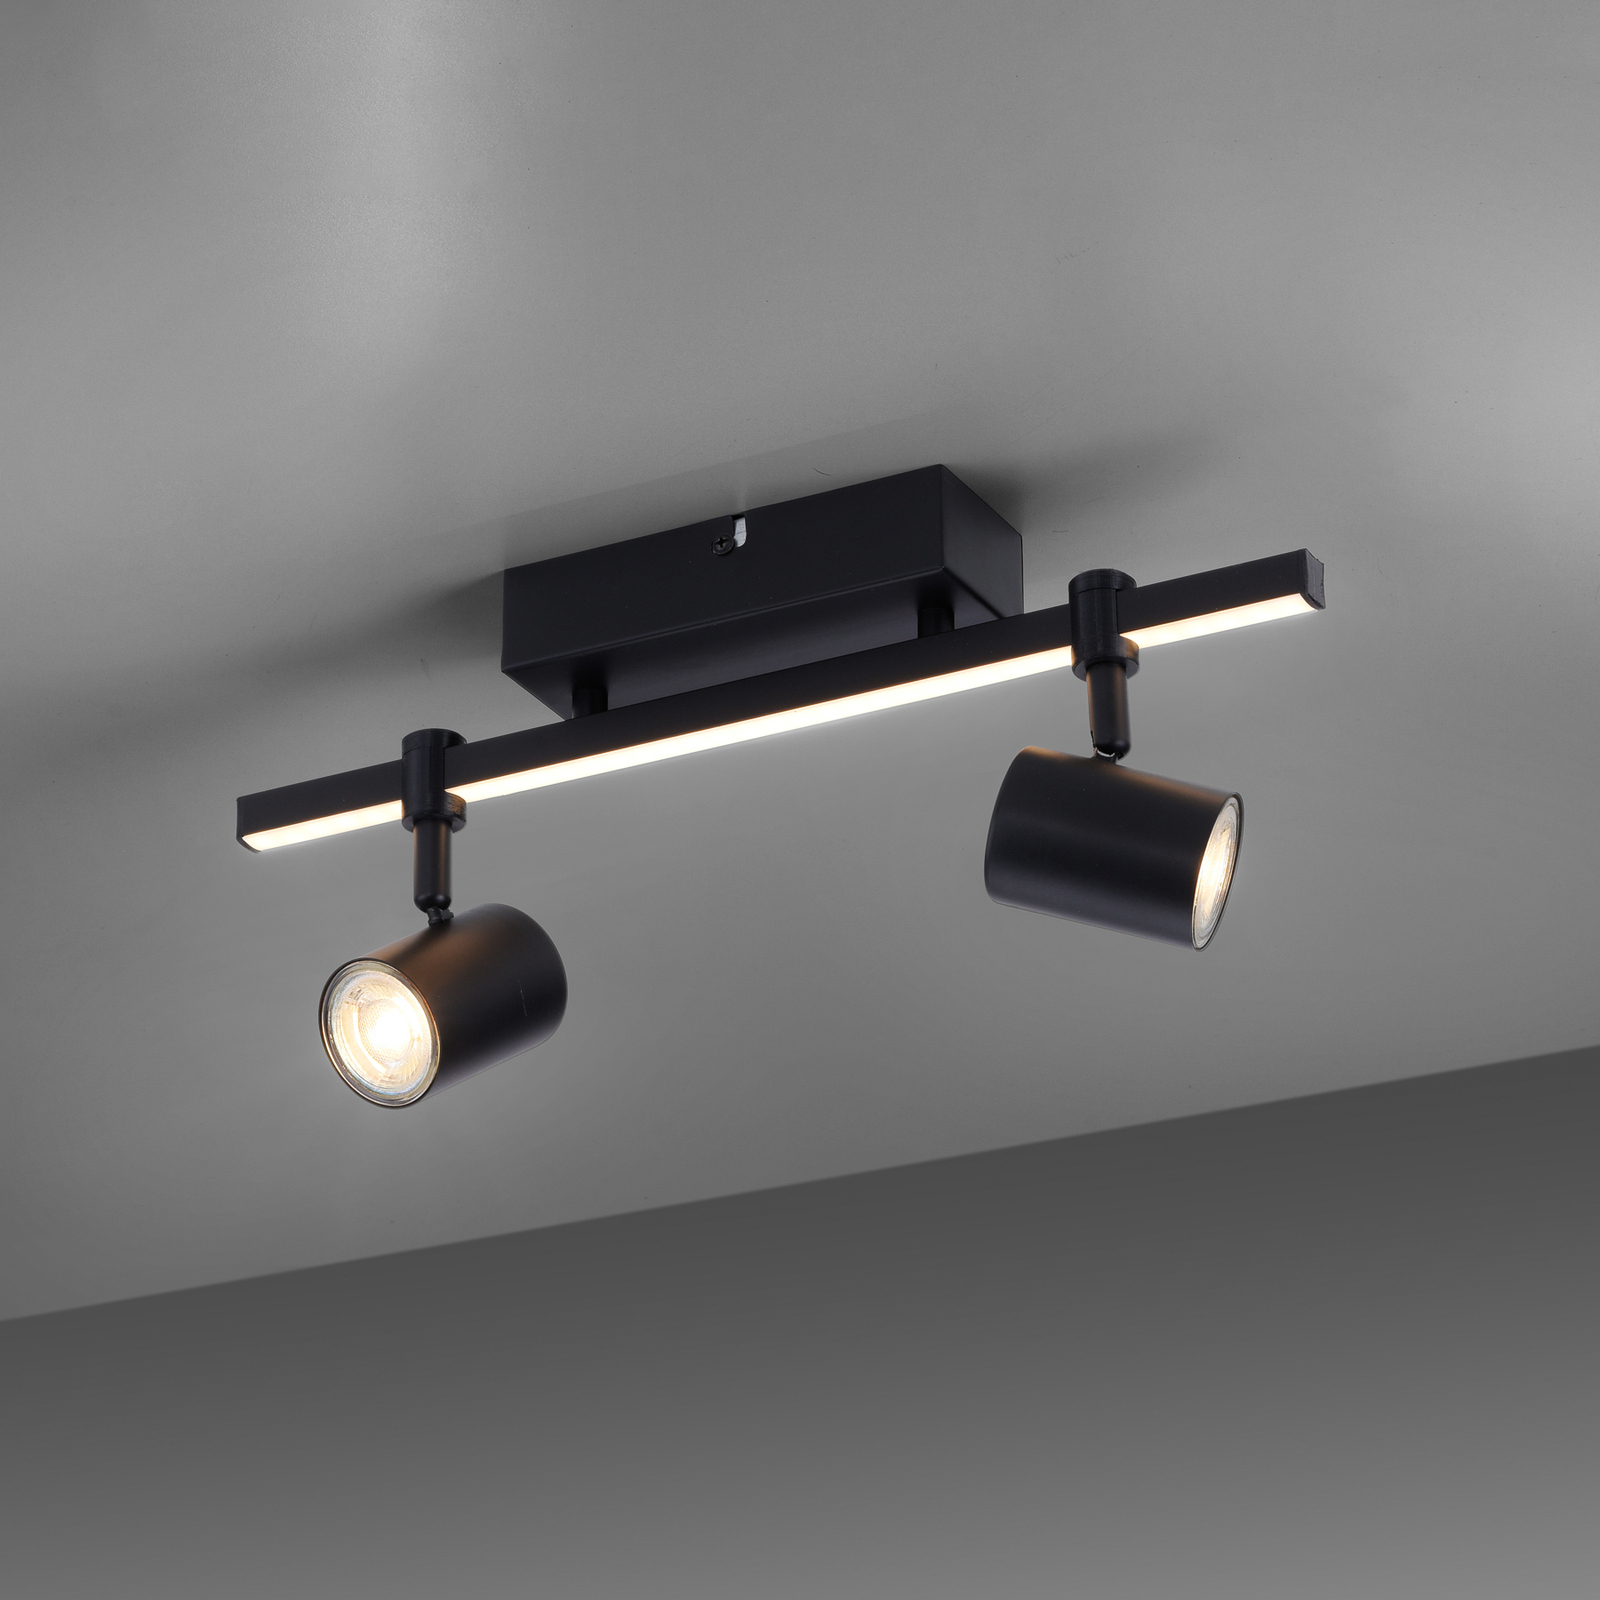 Faretto LED a soffitto Barik, nero, 2 luci